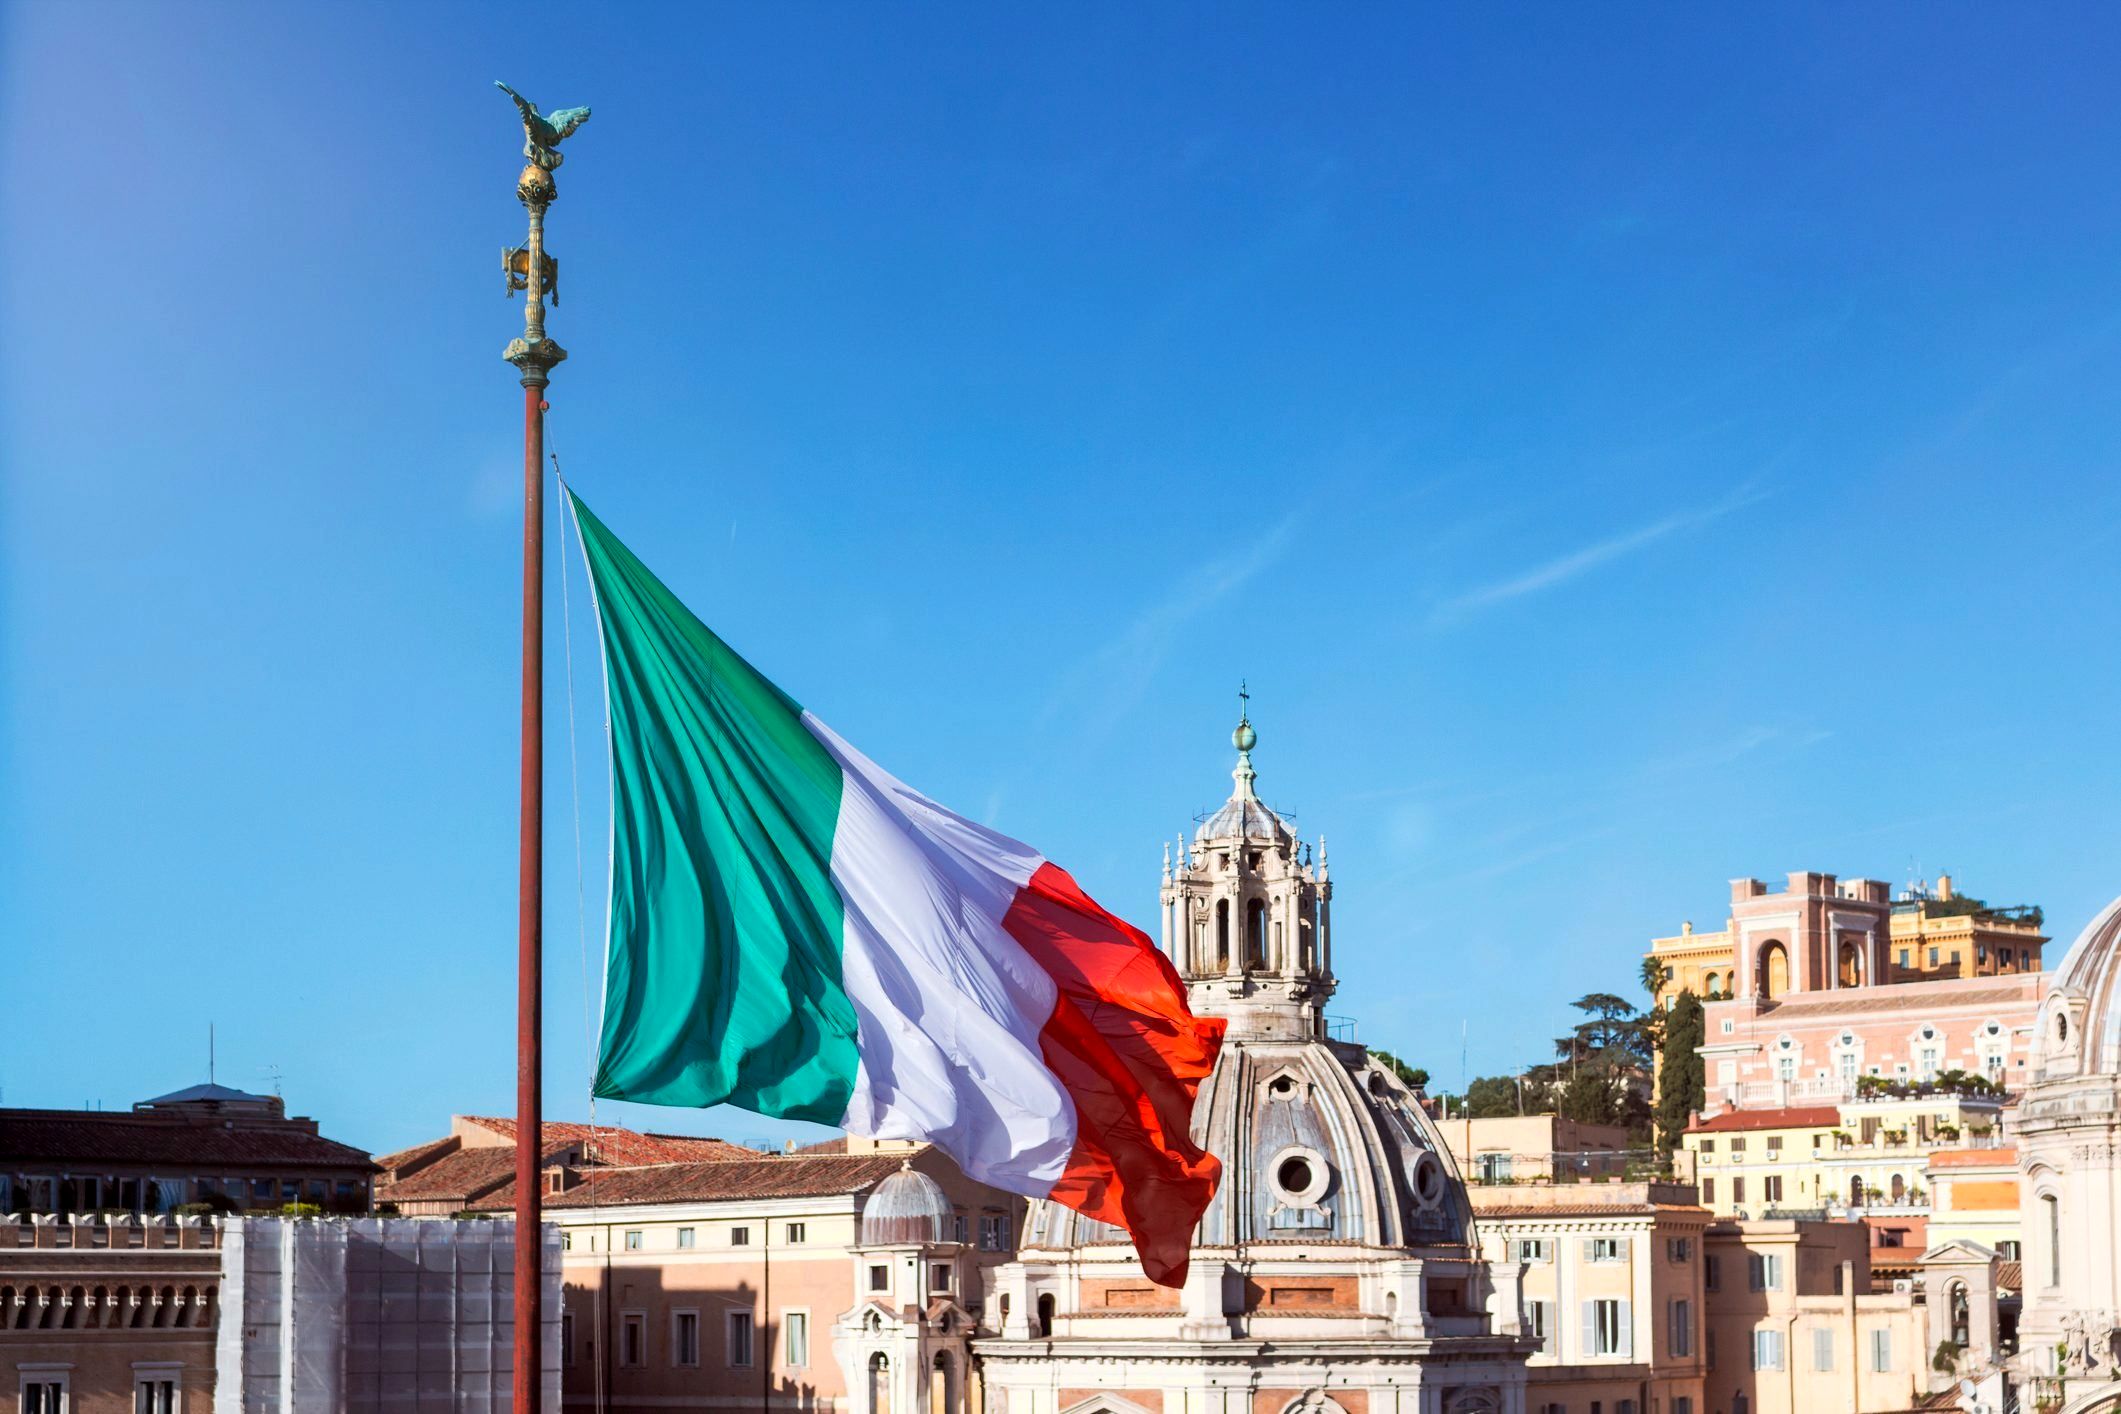 تبریک ایتالیا به پزشکیان / امیدواری برای تقویت روابط دیپلماتیک